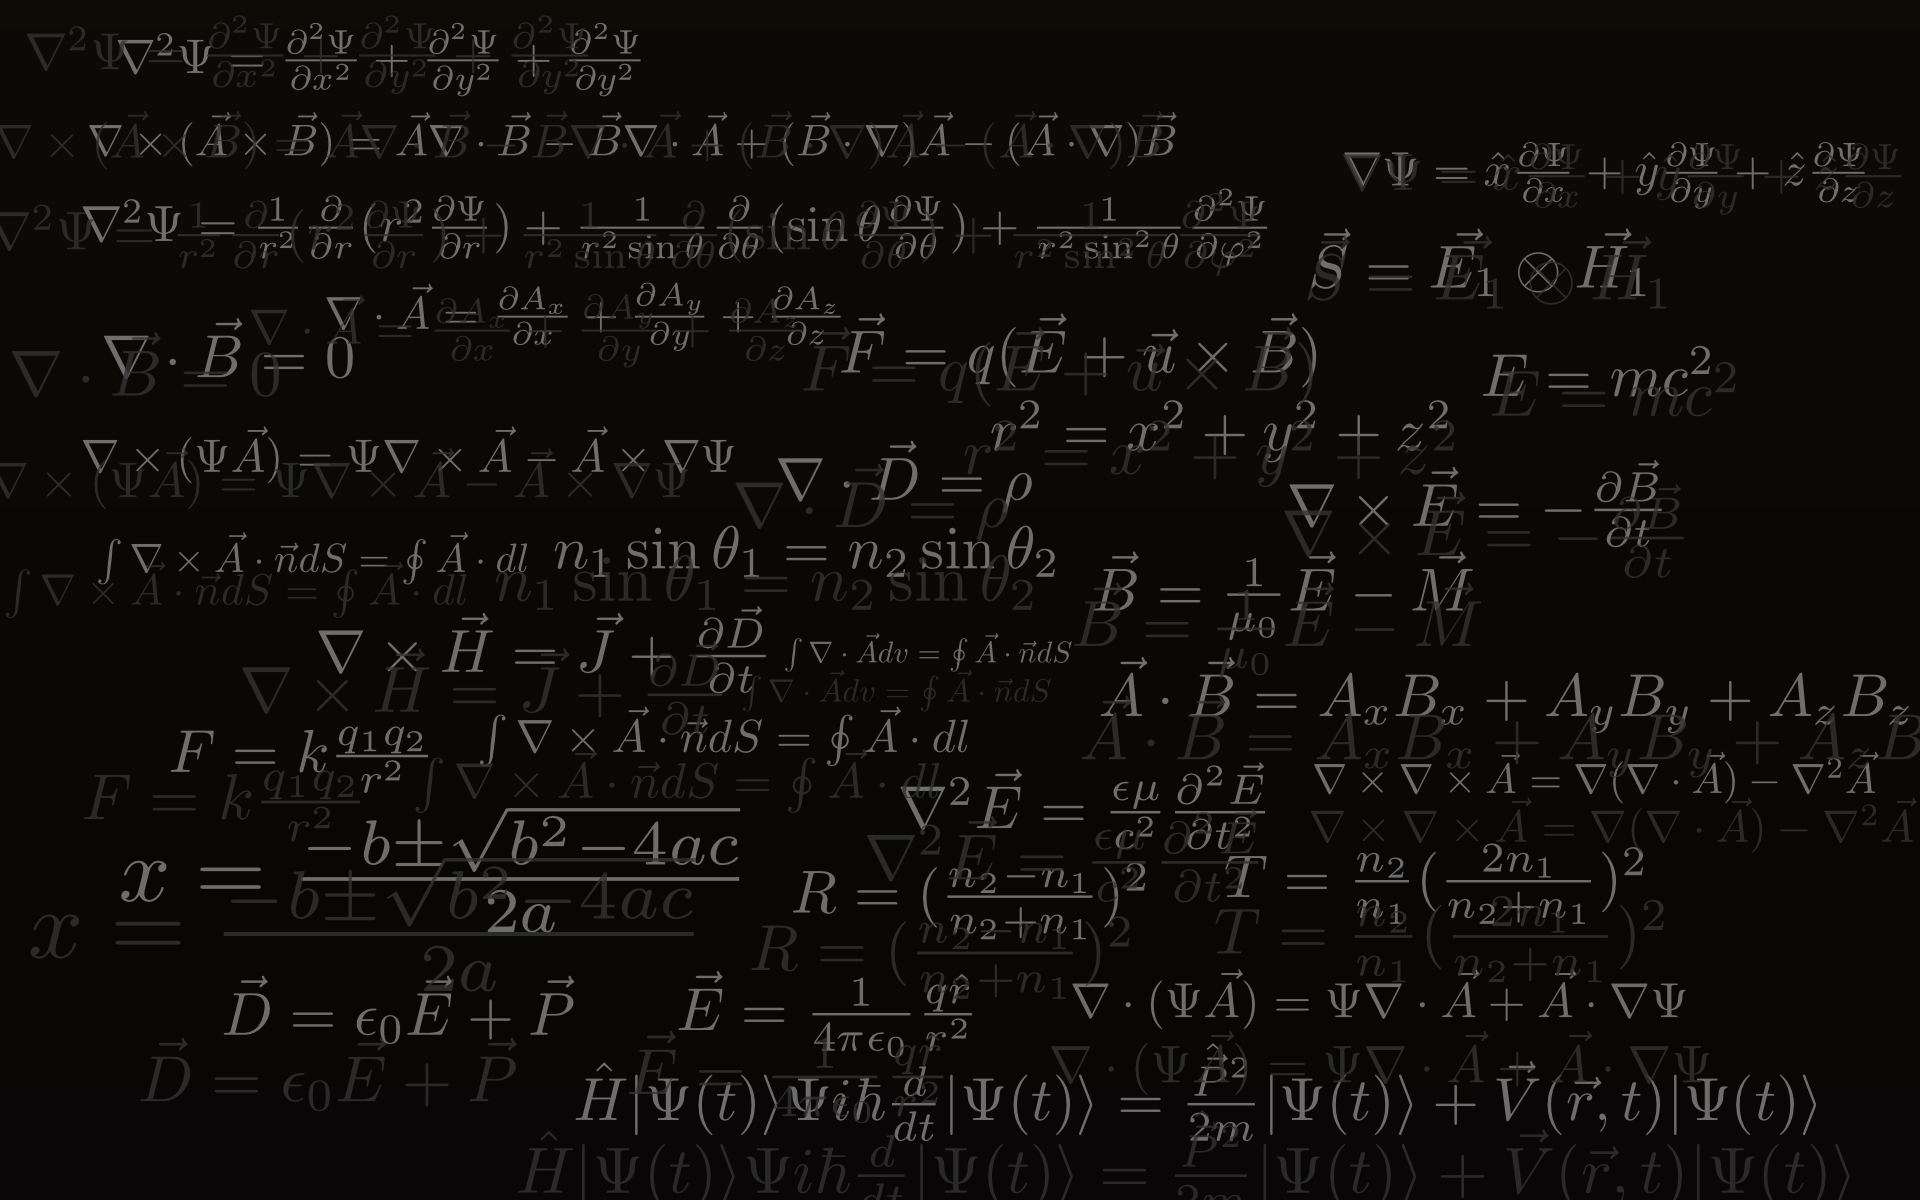 Physics Equations Wallpaper